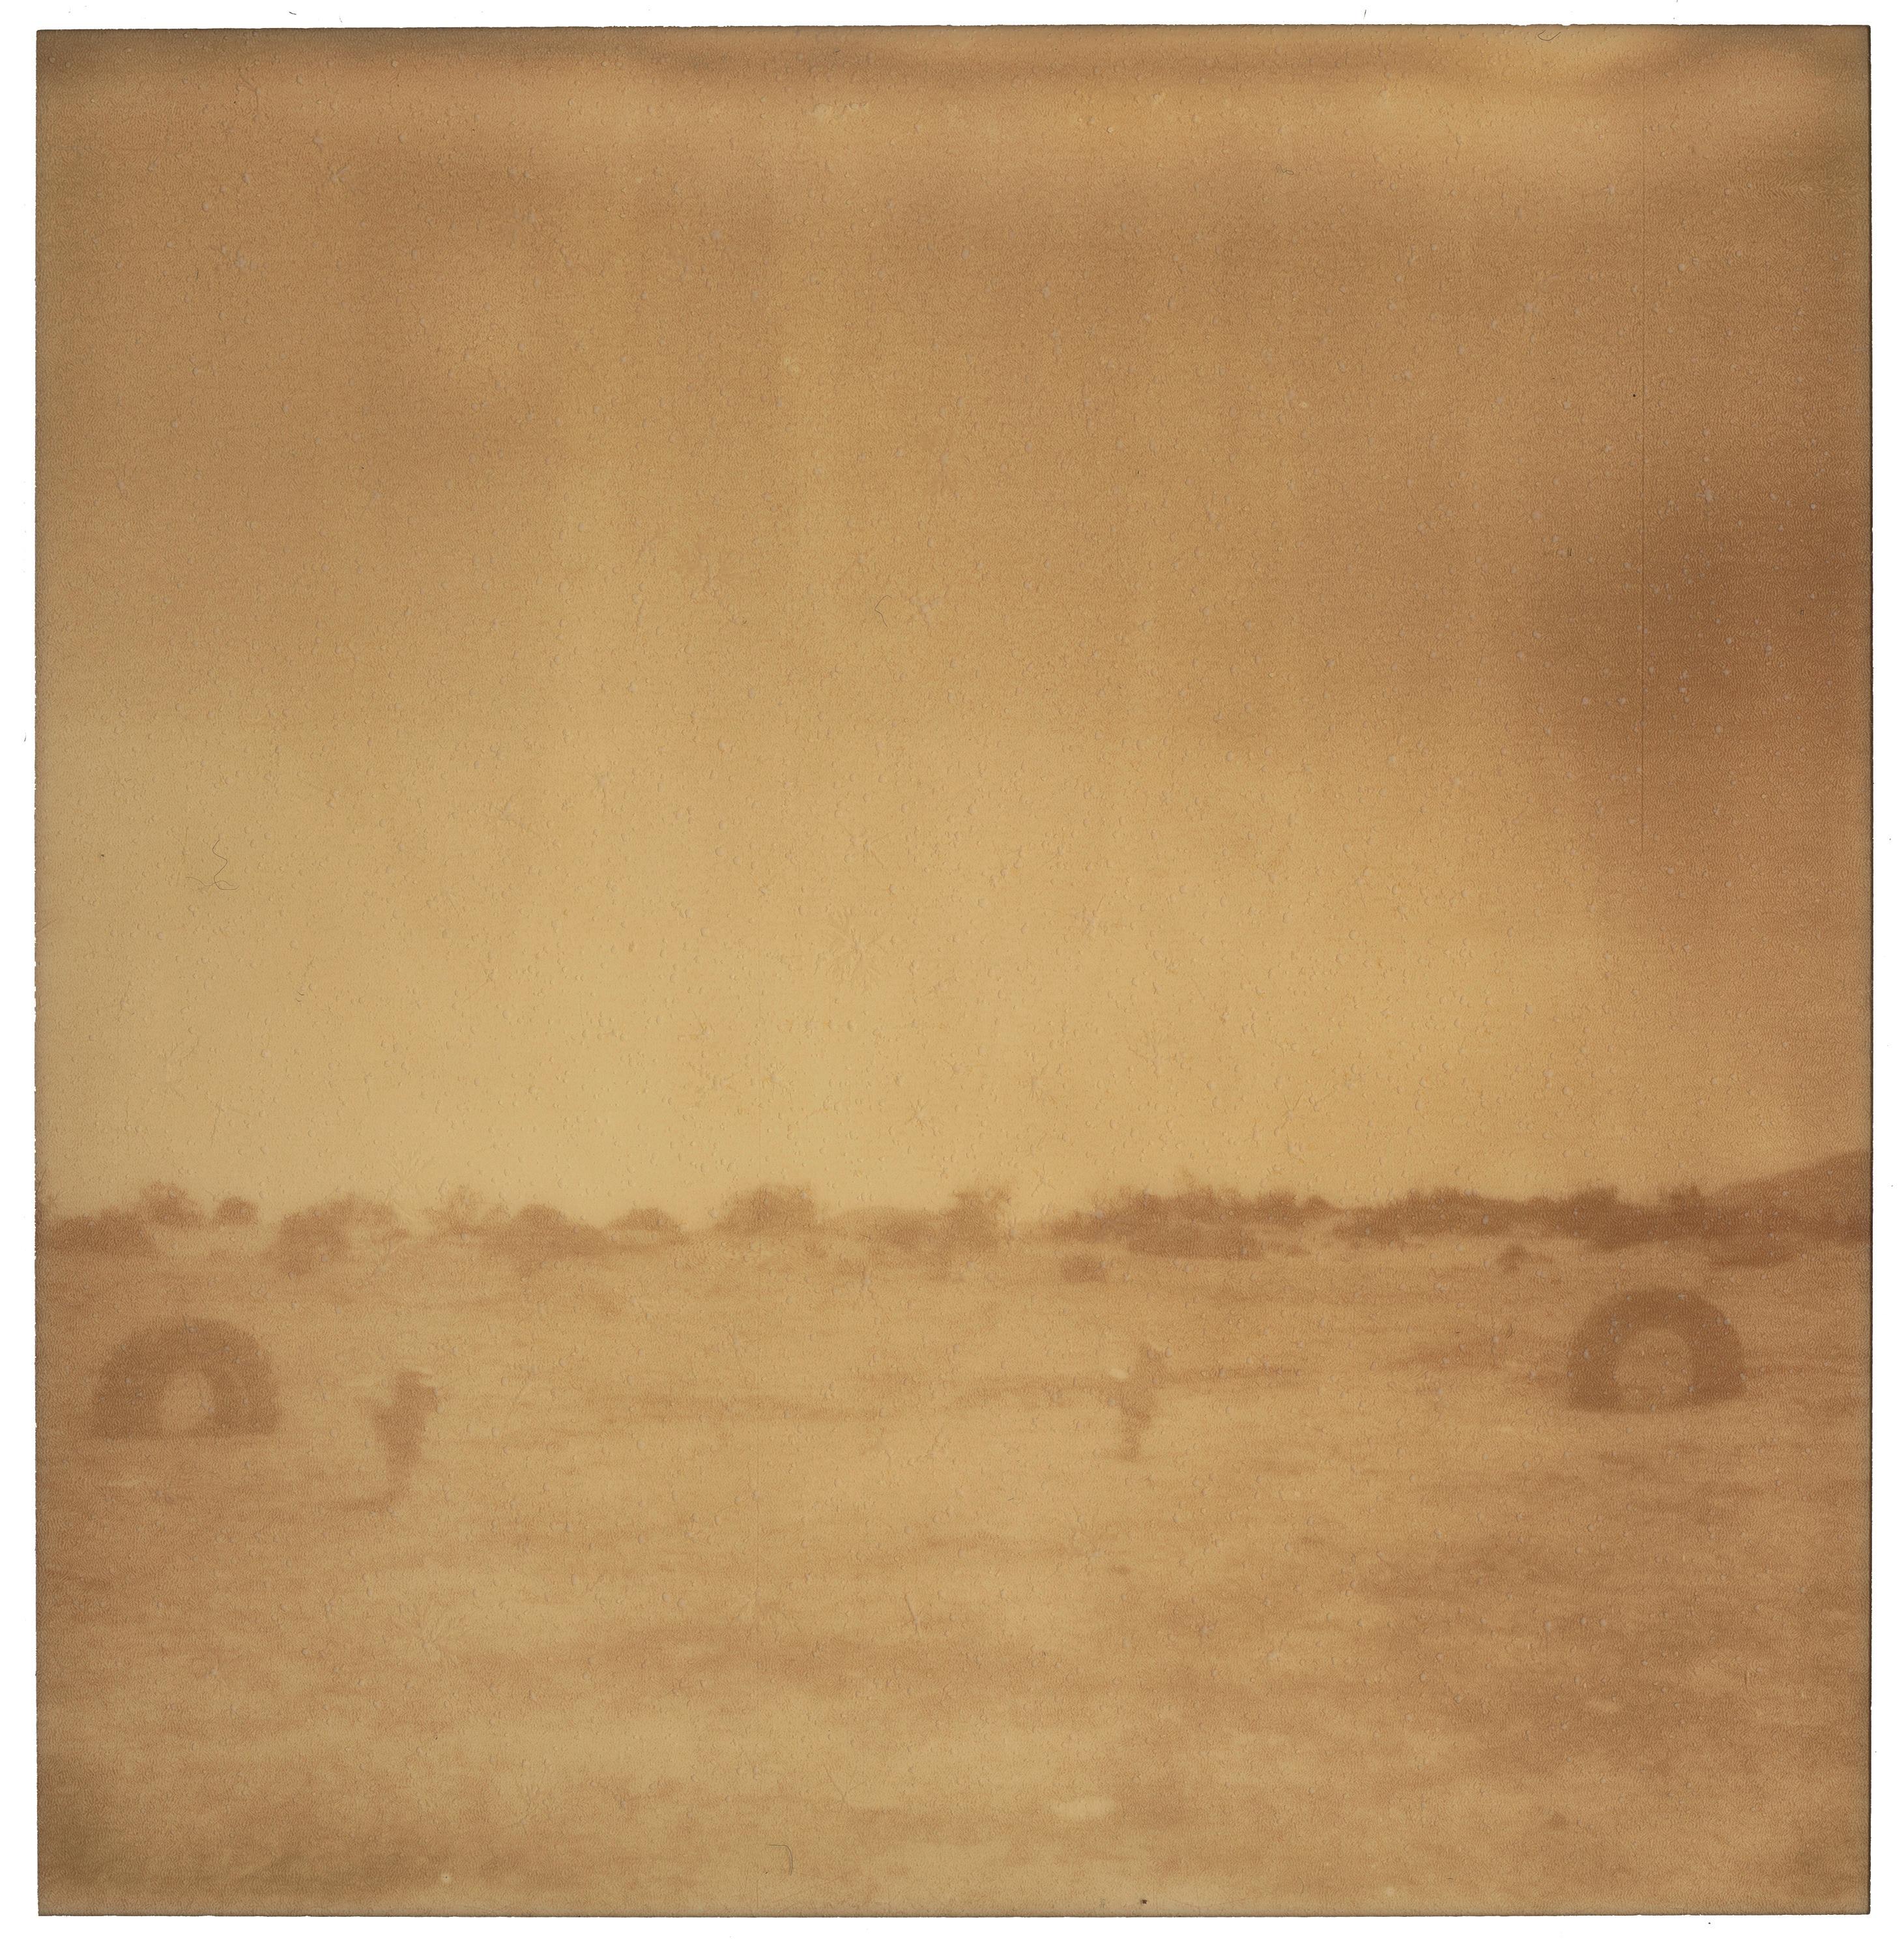 Stefanie Schneider Landscape Photograph - Desert Playground (Oxana's 30th Birthday) - Contemporary, Landscape, Polaroid